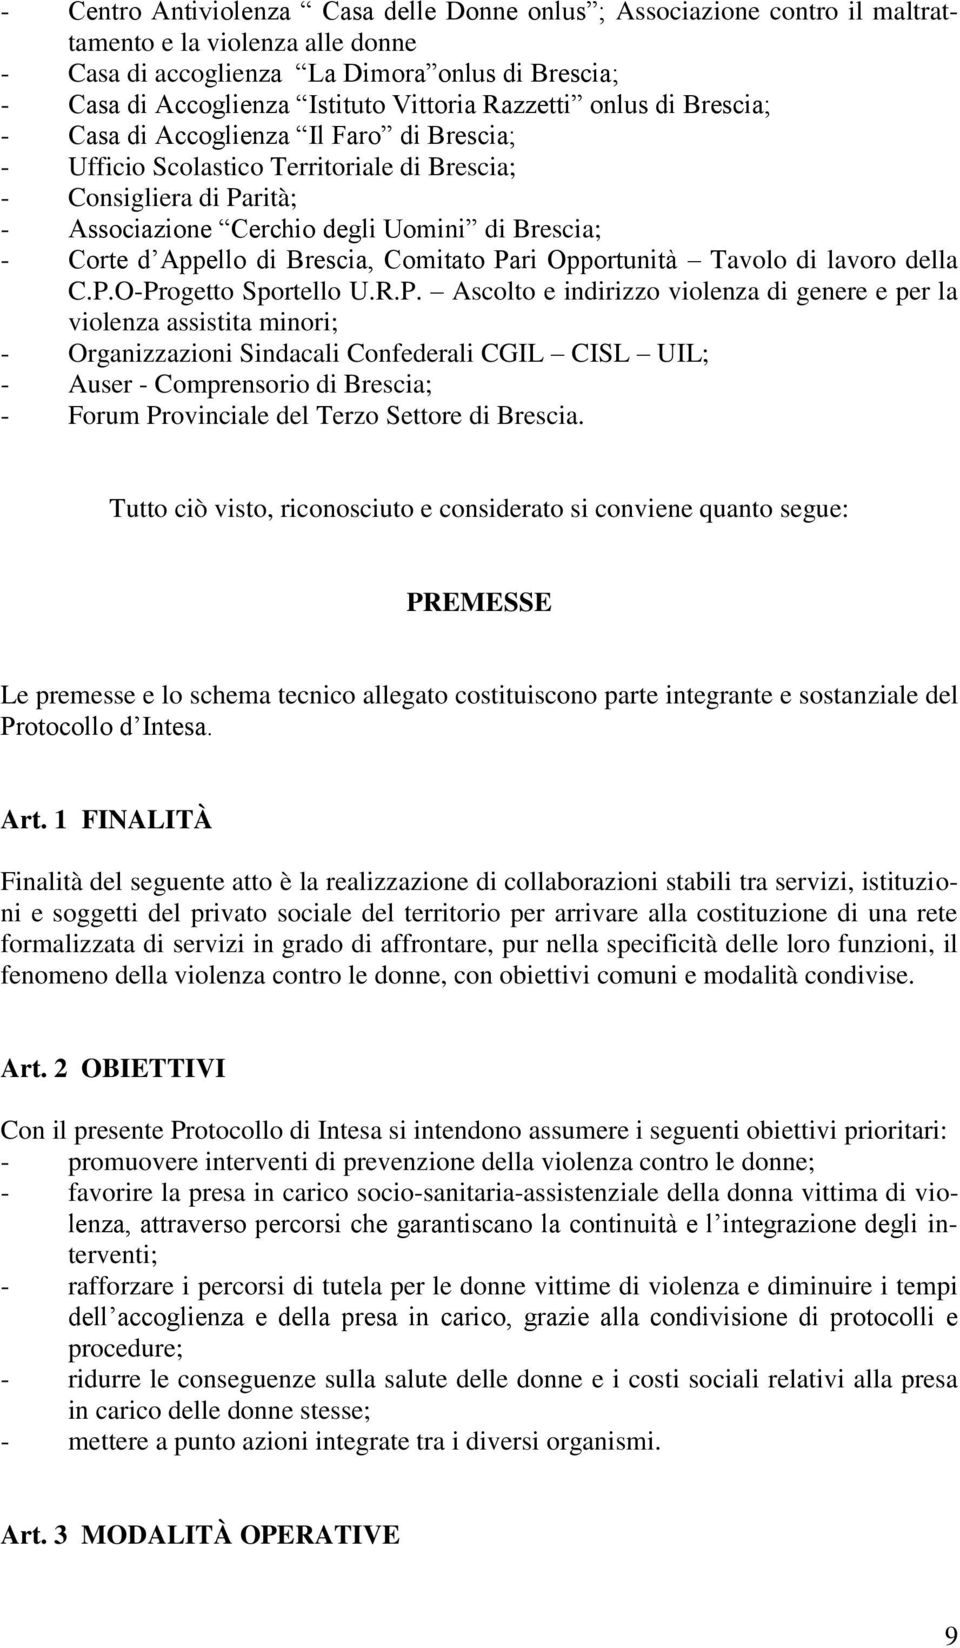 Appello di Brescia, Comitato Pa